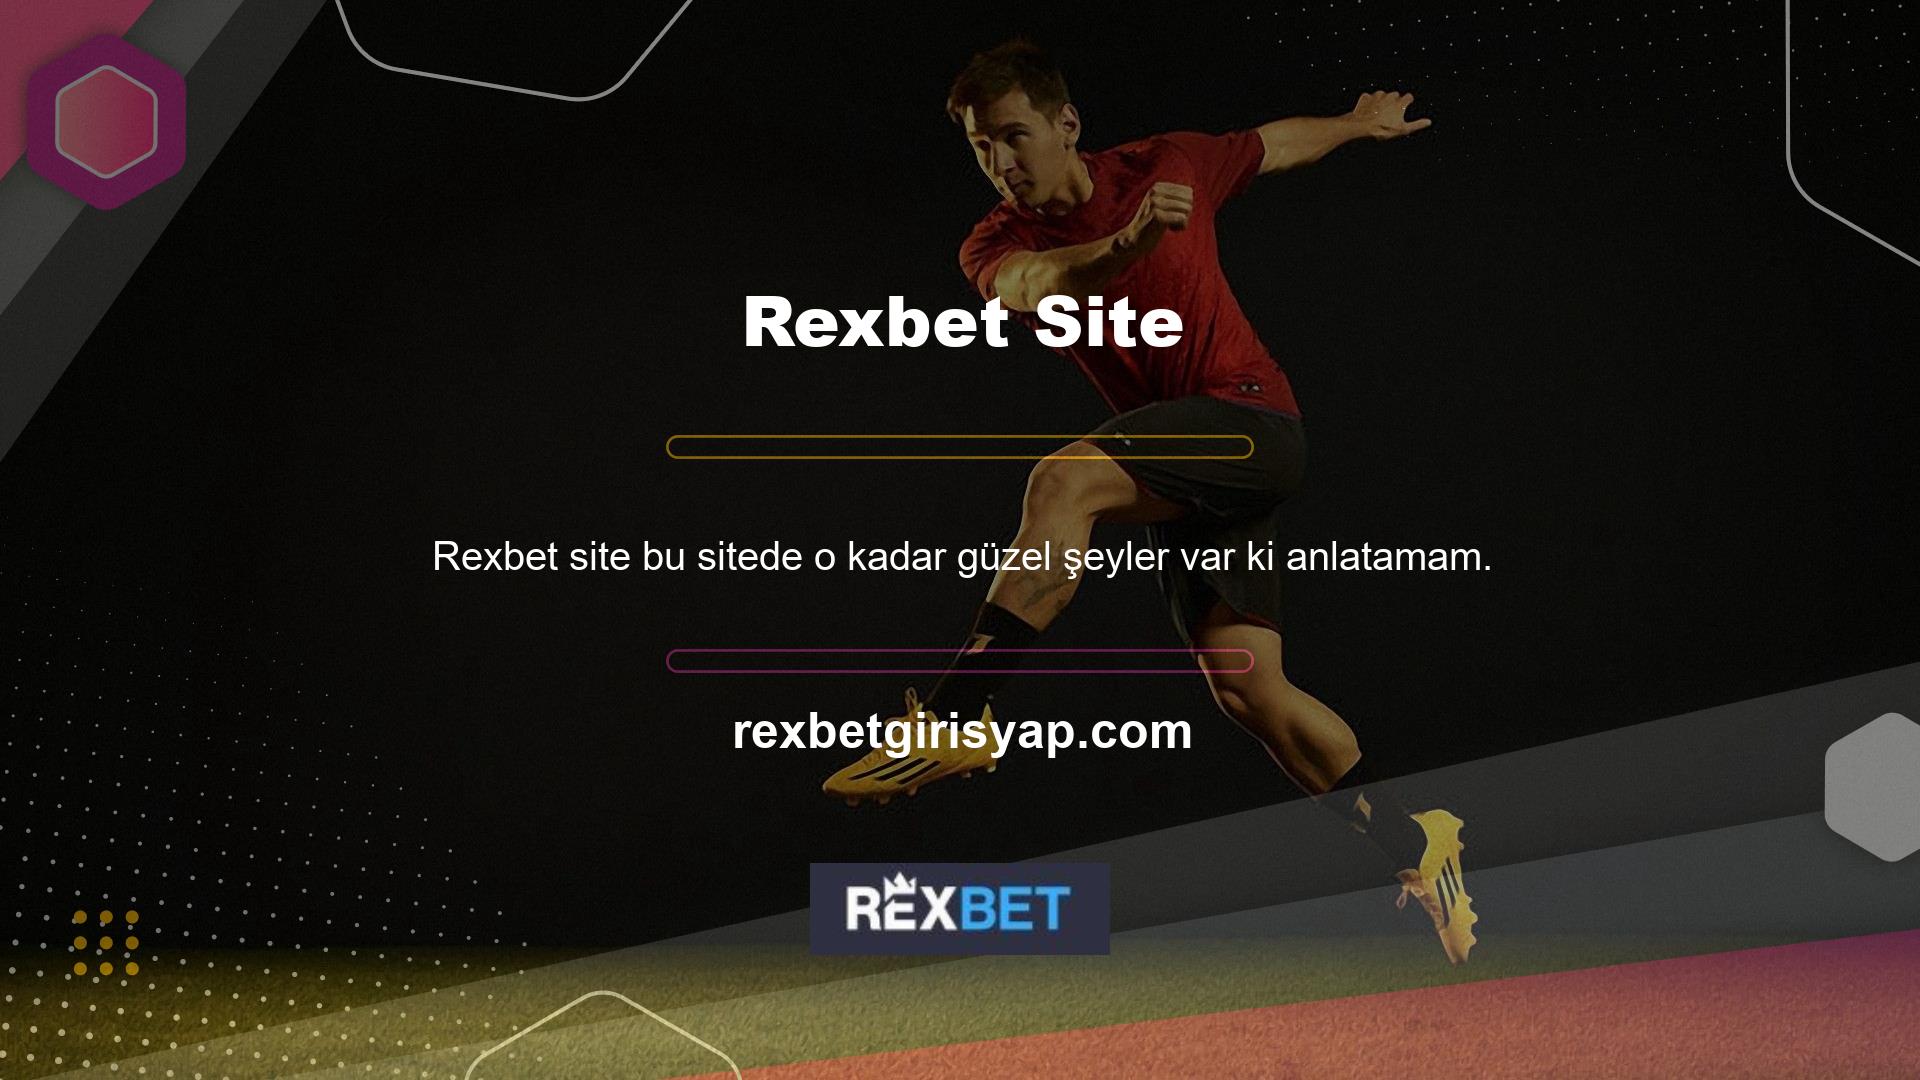 Yeni Rexbet giriş bağlantısını kullanarak bu avantajlardan çevrimiçi olarak da yararlanabilirsiniz